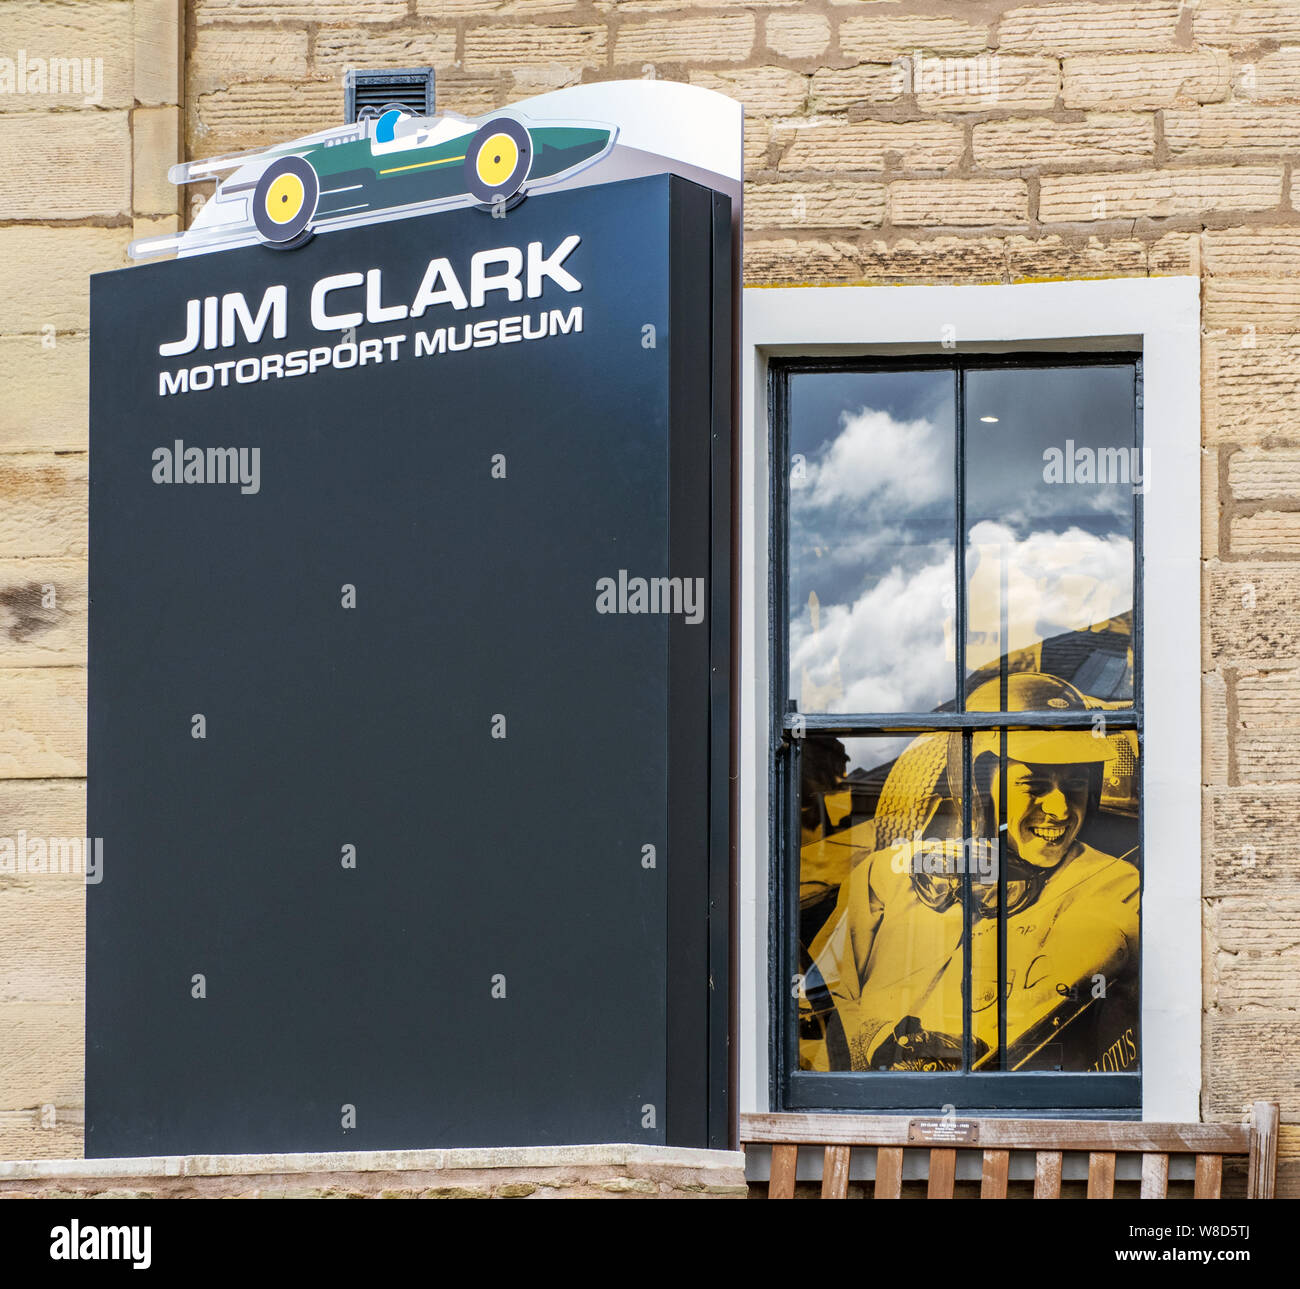 Das Jim Clark Motorsport Museum in der Marktgemeinde Duns in den Scottish Borders ist für das Leben und die Motorsportkarriere des Jim Clark gewidmet. Stockfoto